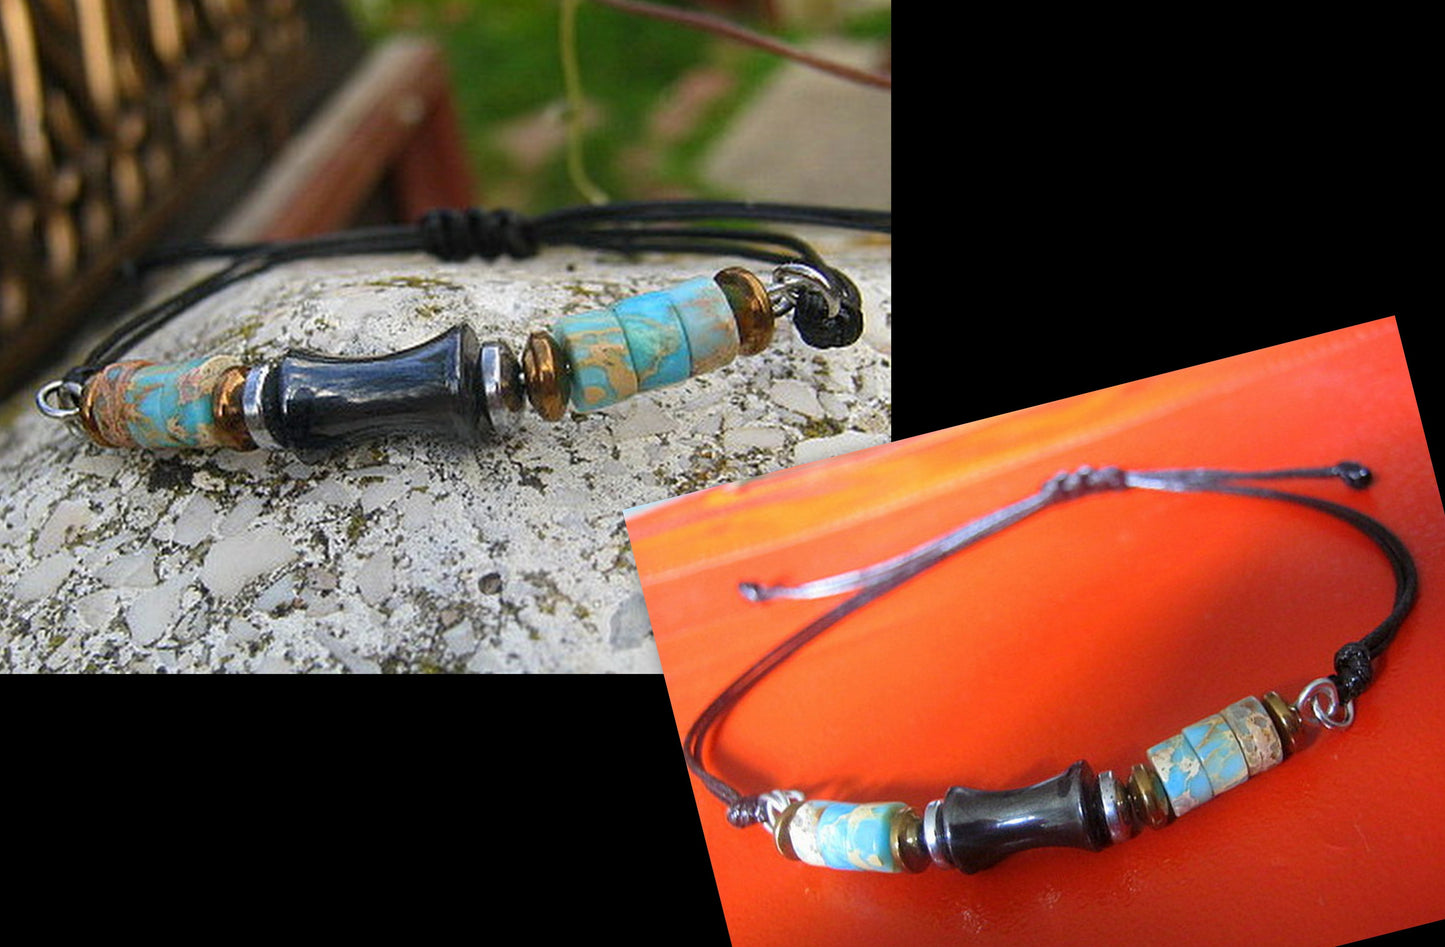 Men African OPAL stone Hematite bracelet thin Cord slice knot Bracelet, Healing crystal, Stack slim set surfer Handmade bracelet men gift